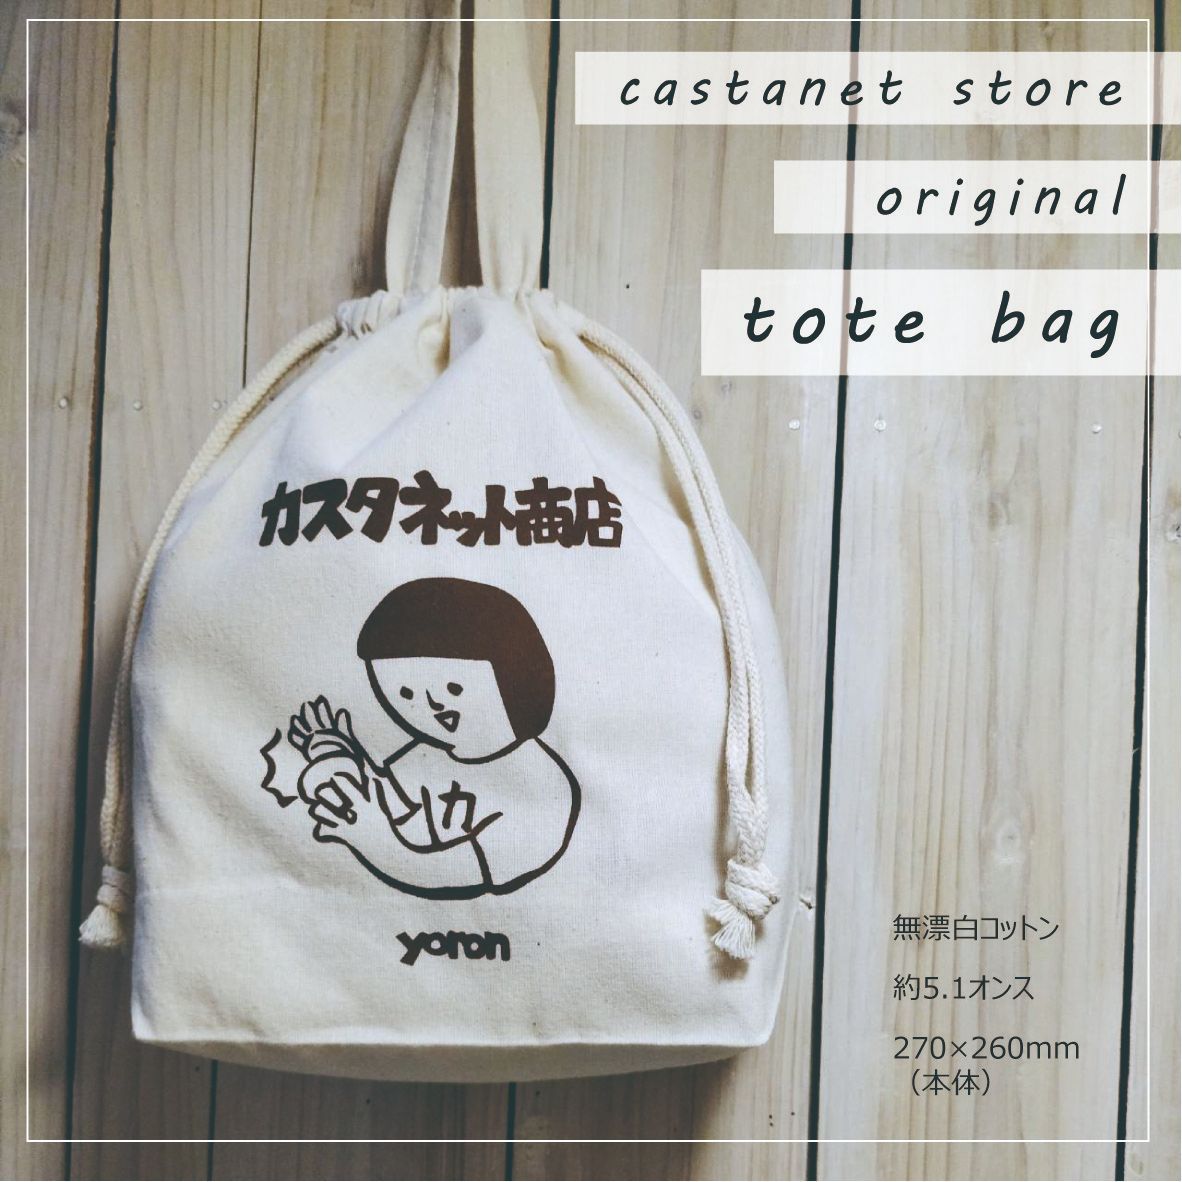 カスタネット商店【オリジナル巾着ミニトートバッグ】-0